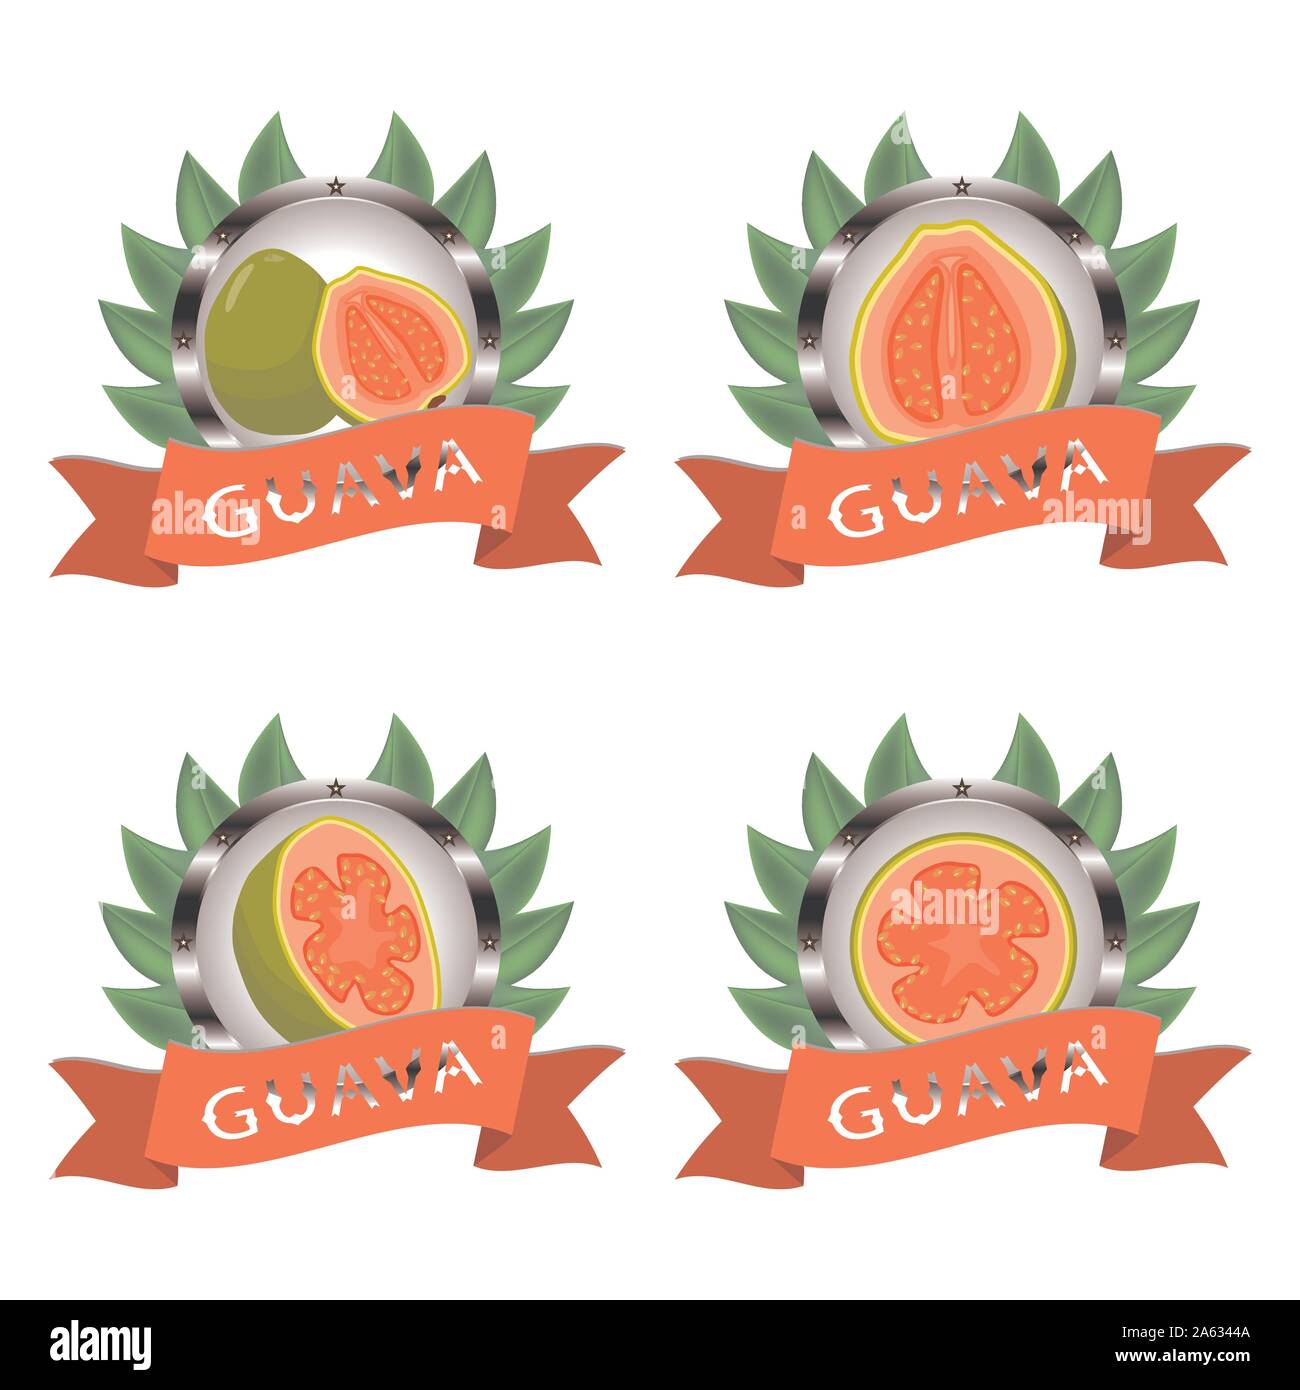 Abstract vector illustration icône logo pour ensemble de fruits mûrs, de goyave verte la moitié de la coupe. La goyave est constituée de l'étiquette de la carte, natural design sign tropi Illustration de Vecteur